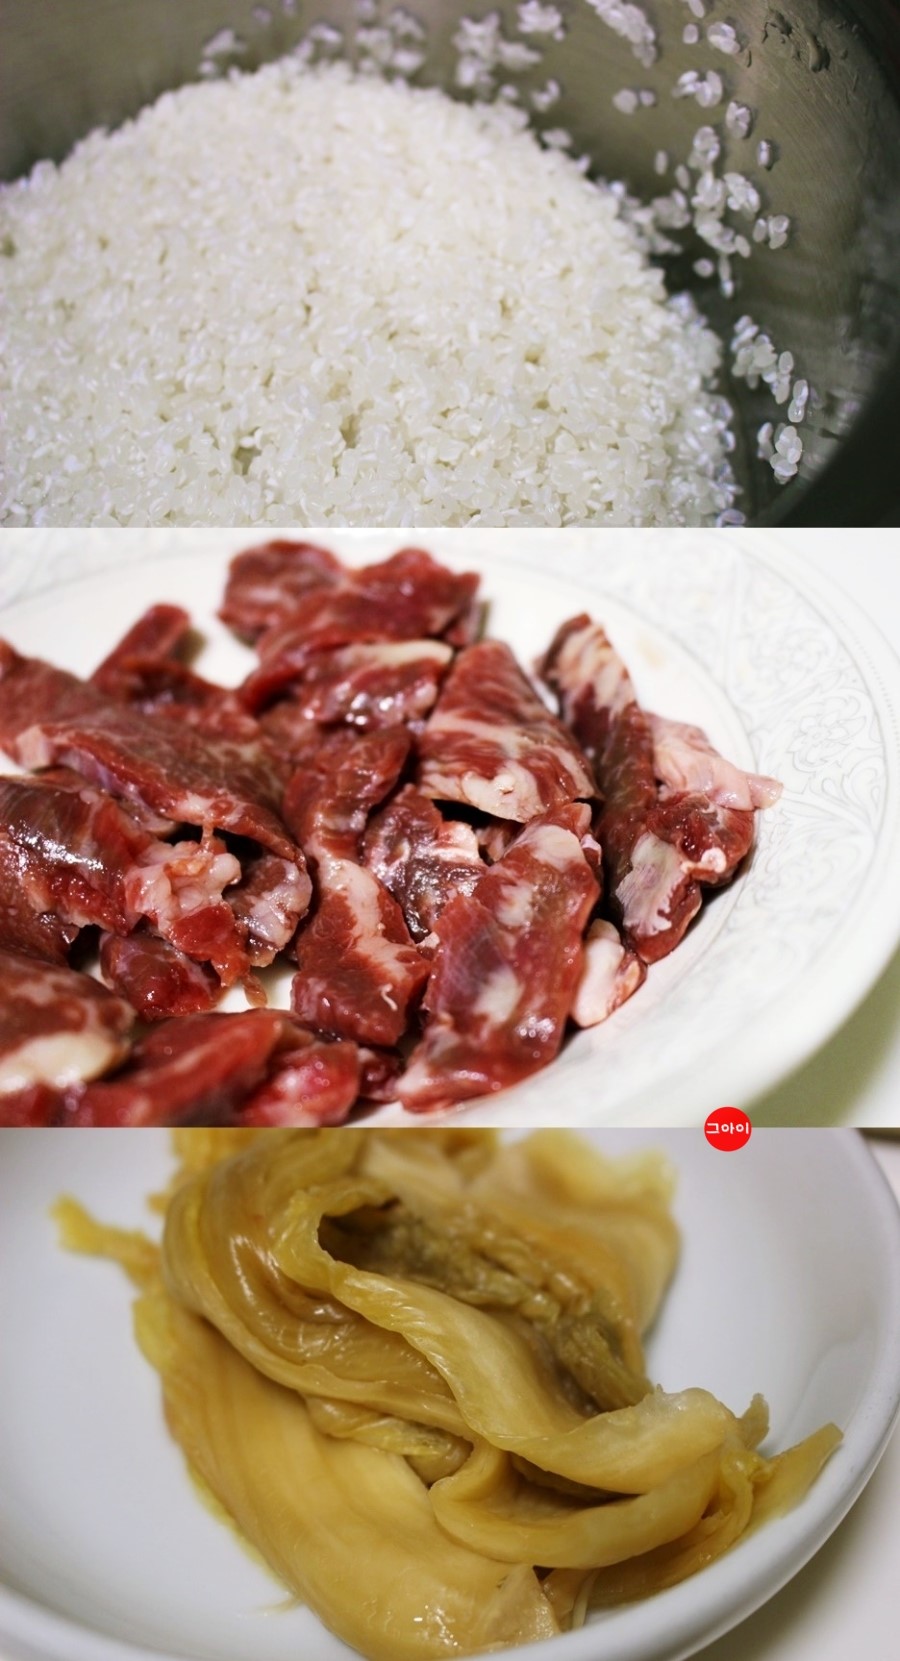 산토리 레시피로 만든 김치밥, 산토리맥주랑 캬아 - 블로그